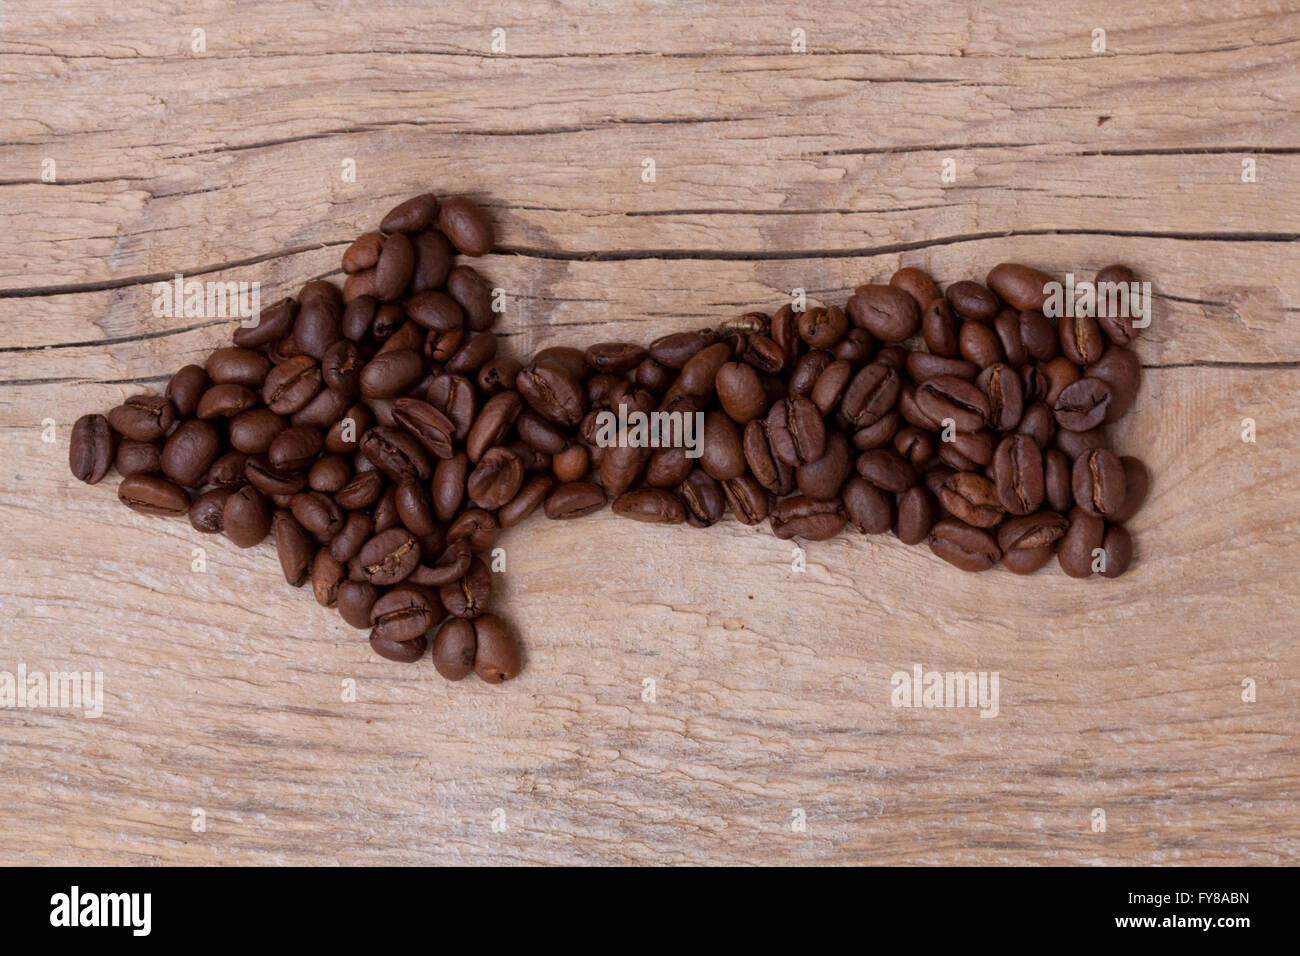 Les grains de café de flèche pointant vers une certaine direction, situé sur une vieille planche de bois, disposition horizontale Banque D'Images